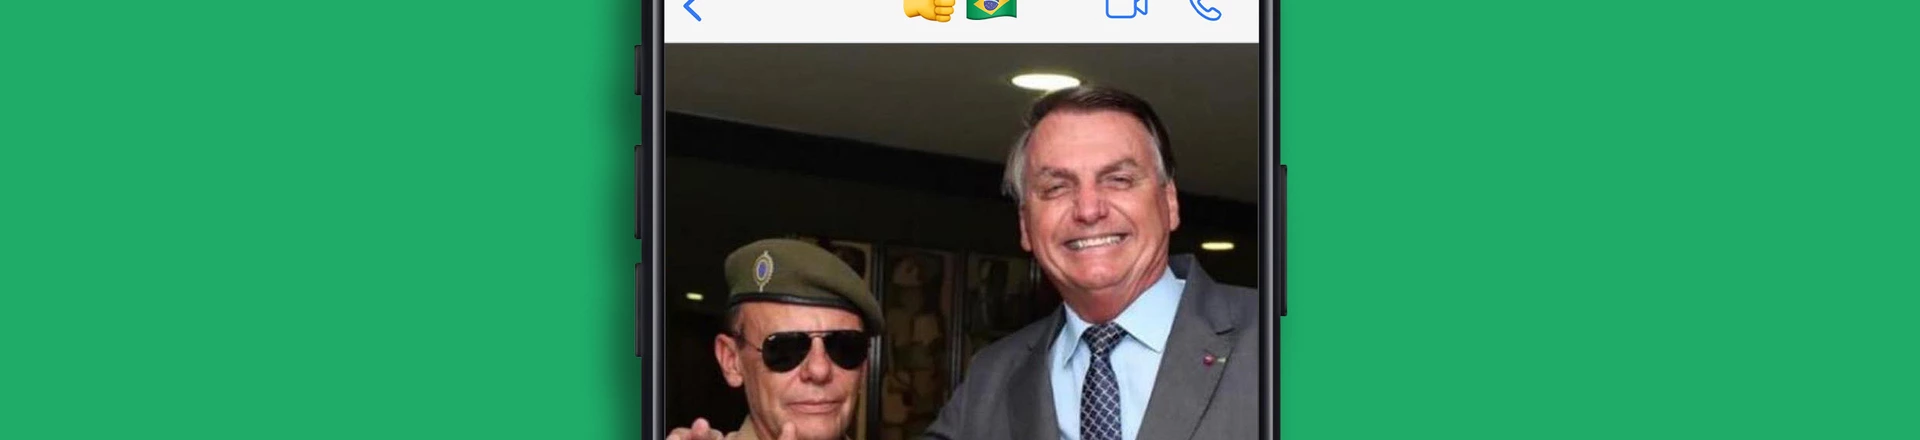 Andriely Cirino, capitão da ativa do Exército, posa ao lado de Jair Bolsonaro.